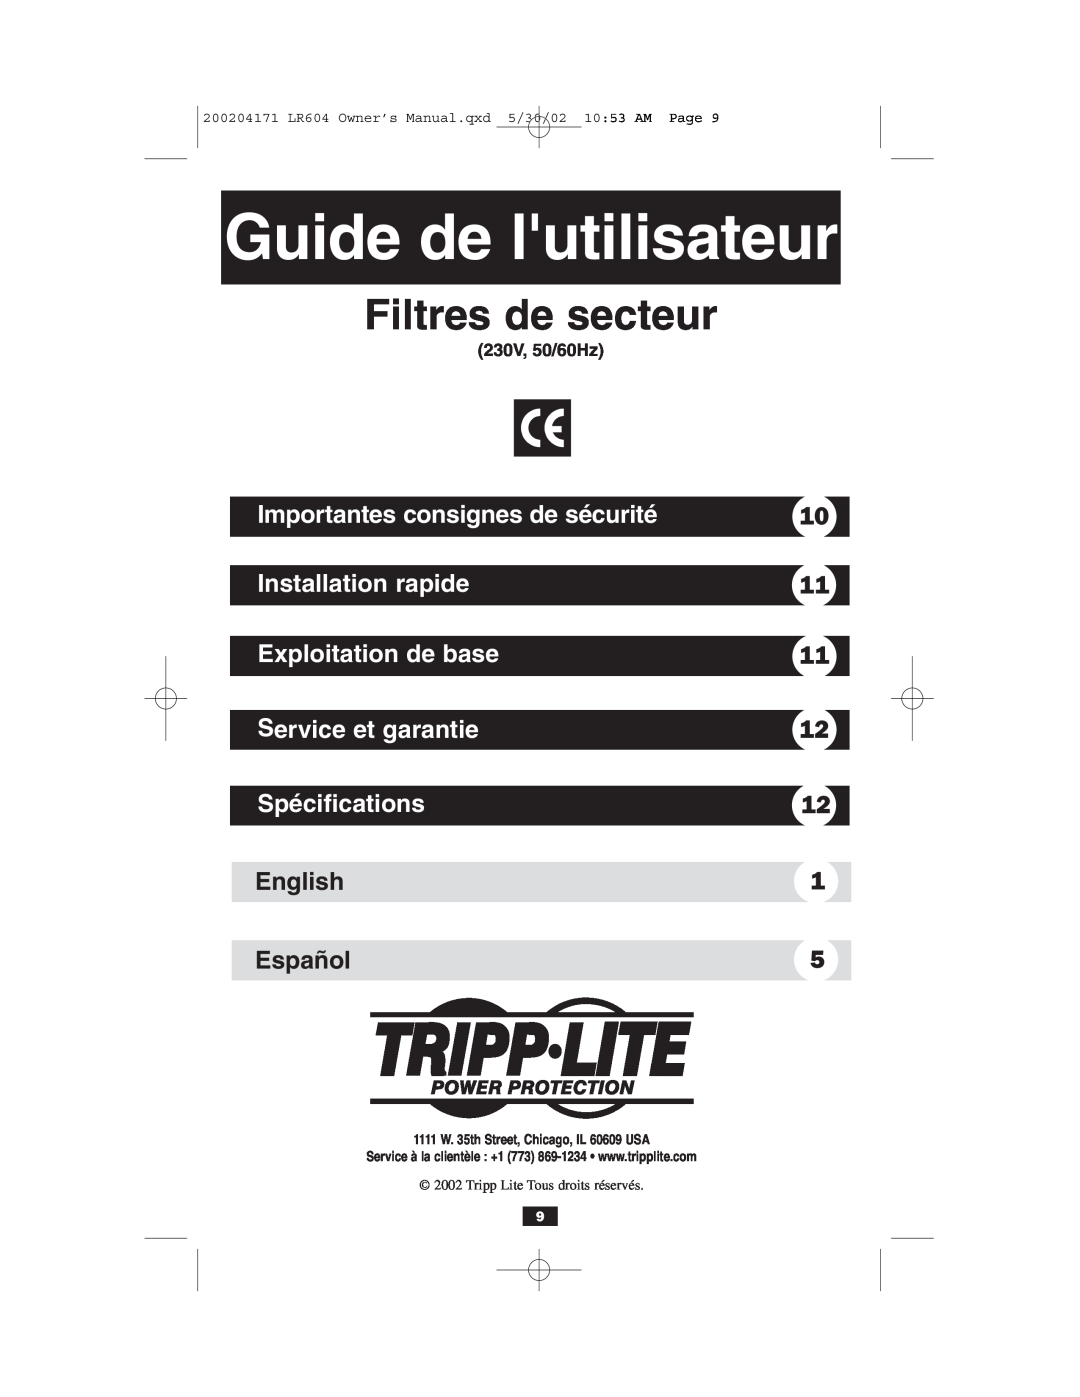 Tripp Lite 230V Guide de lutilisateur, Filtres de secteur, Importantes consignes de sécurité, Installation rapide, English 